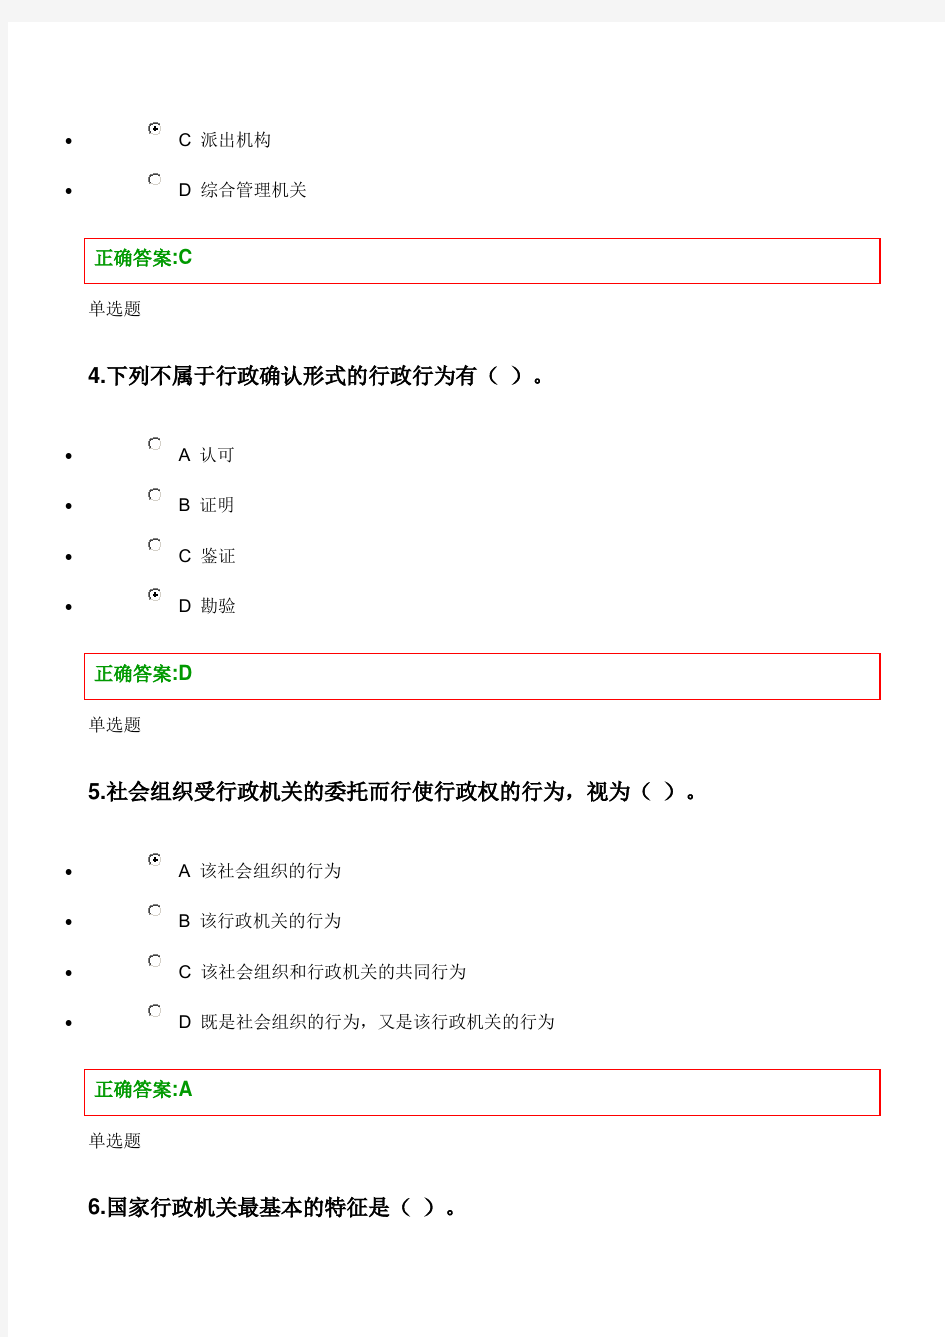 浙大远程教育-2013行政法学在线作业答案.